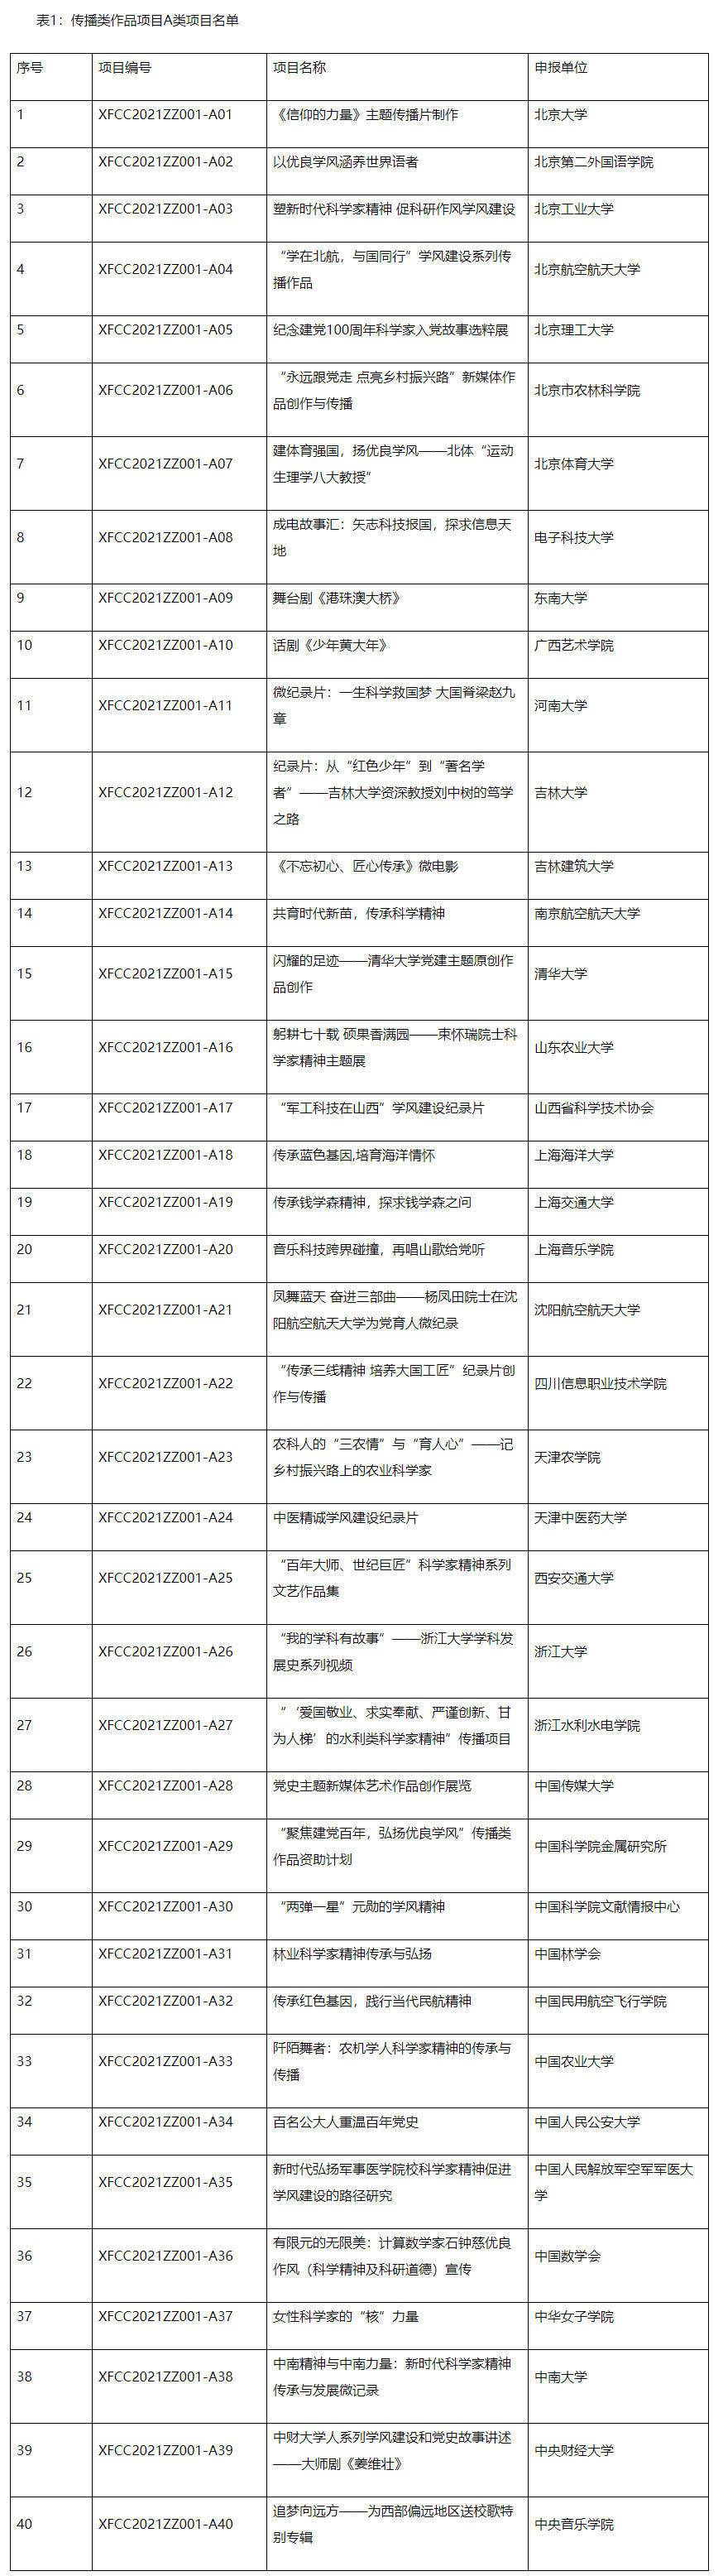 中国科学技术协会 综合 2021年度学风建设资助计划项目立项名单.jpg